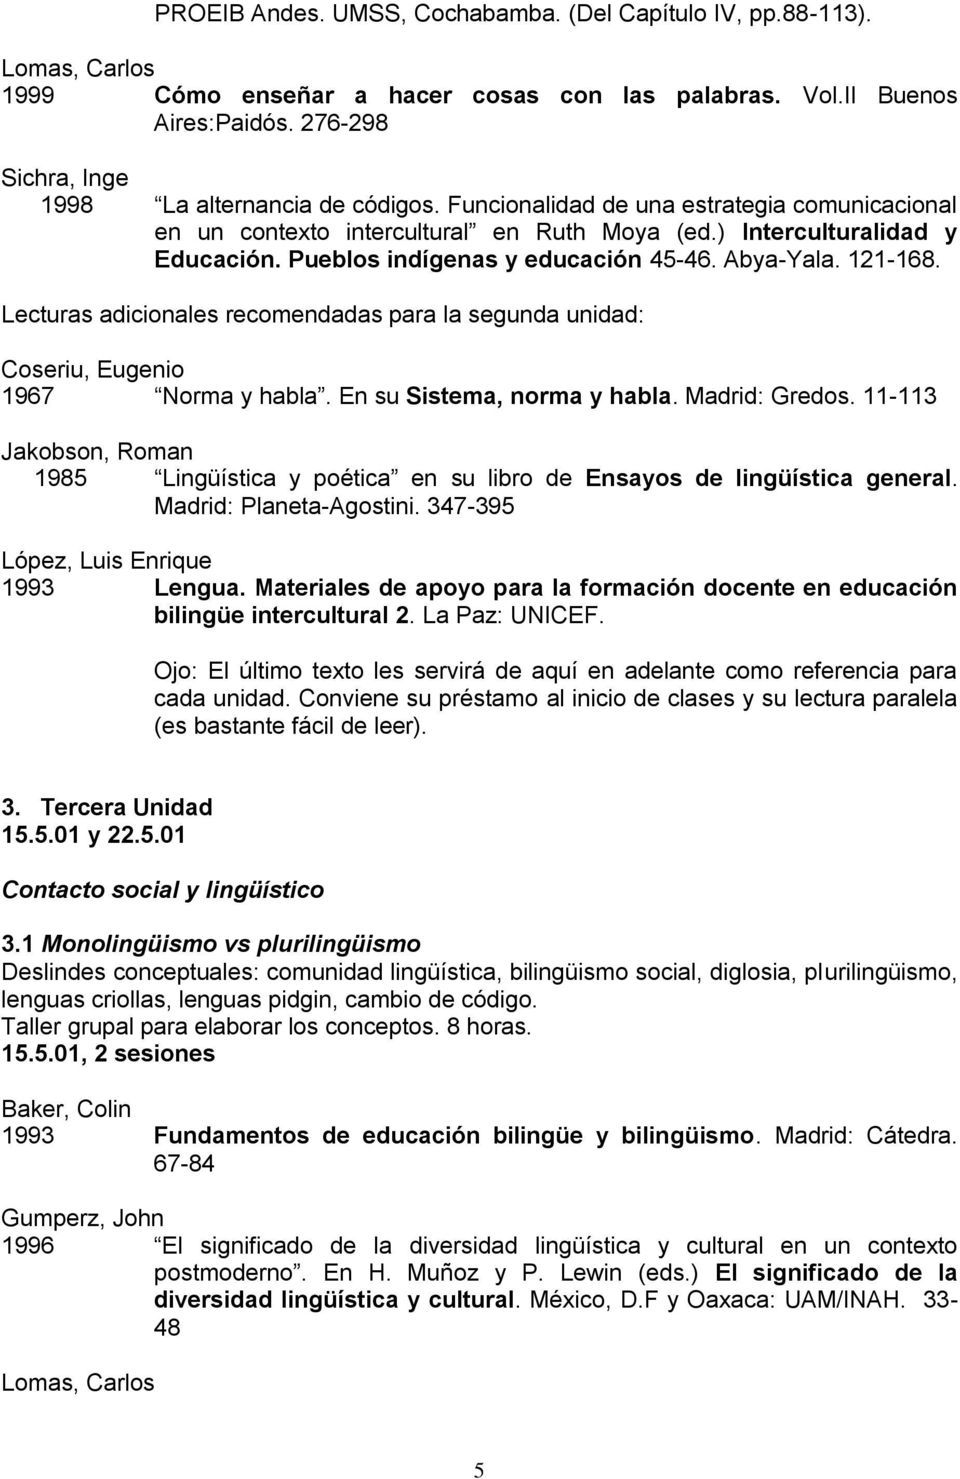 Lecturs dicionles recomendds pr l segund unidd: Coseriu, Eugenio 1967 Norm y hbl. En su Sistem, norm y hbl. Mdrid: Gredos.